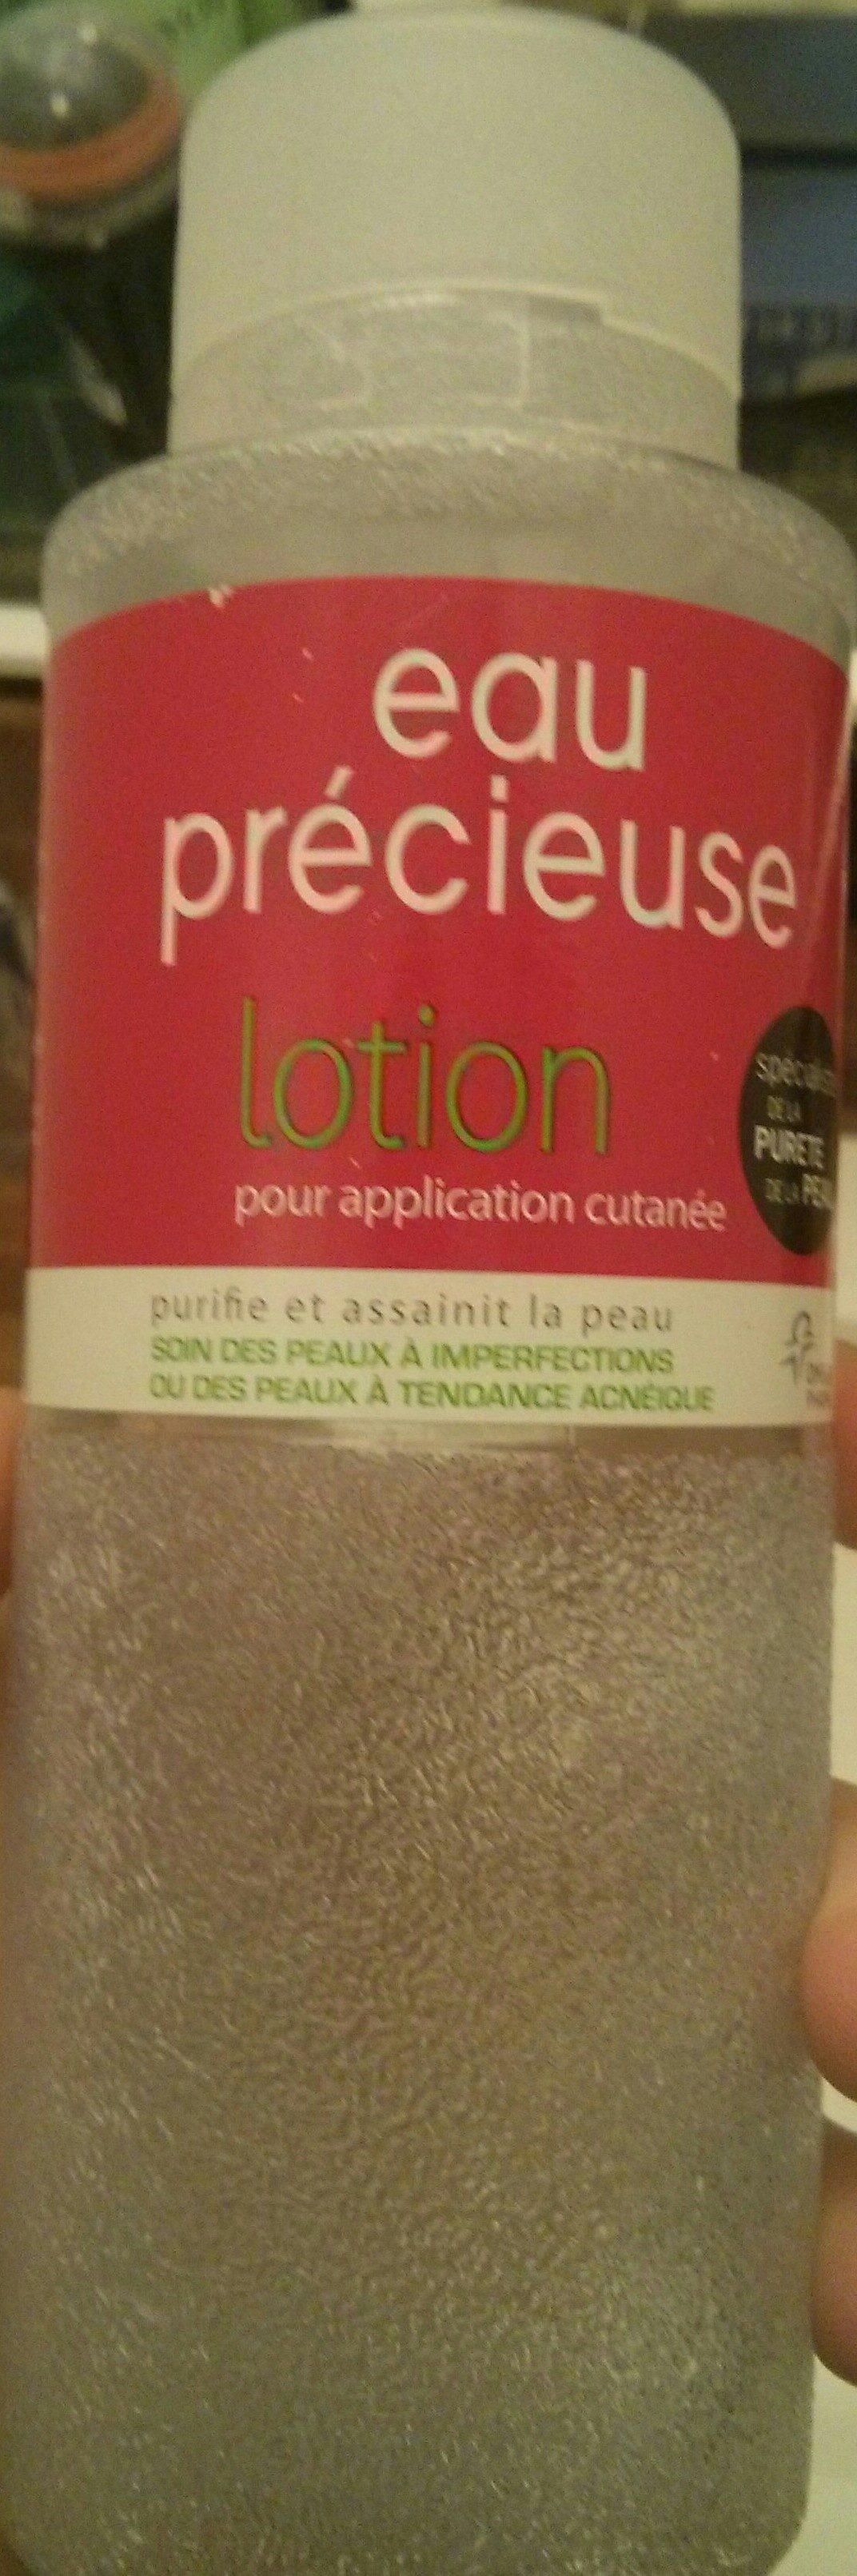 eau précieuse lotion - Product - fr